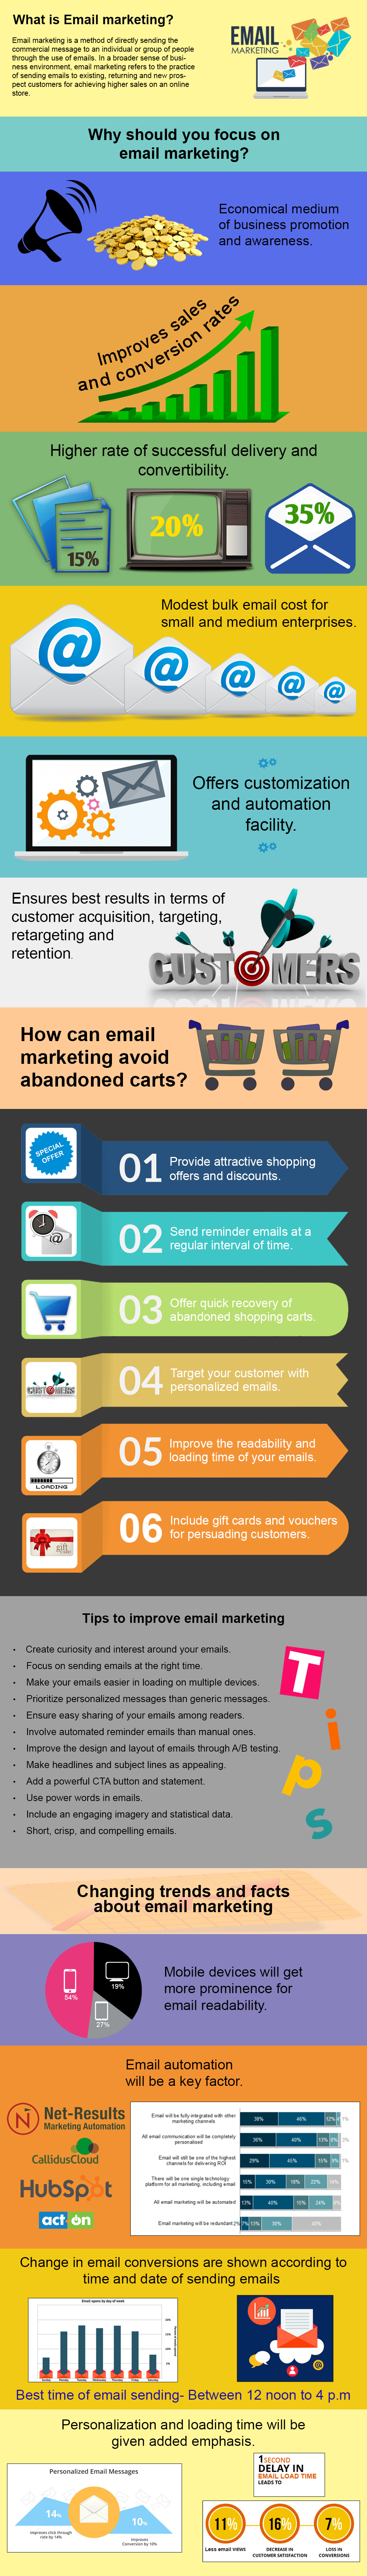 Las conversiones de comercio electrónico a través de marketing por correo electrónico |  knowband